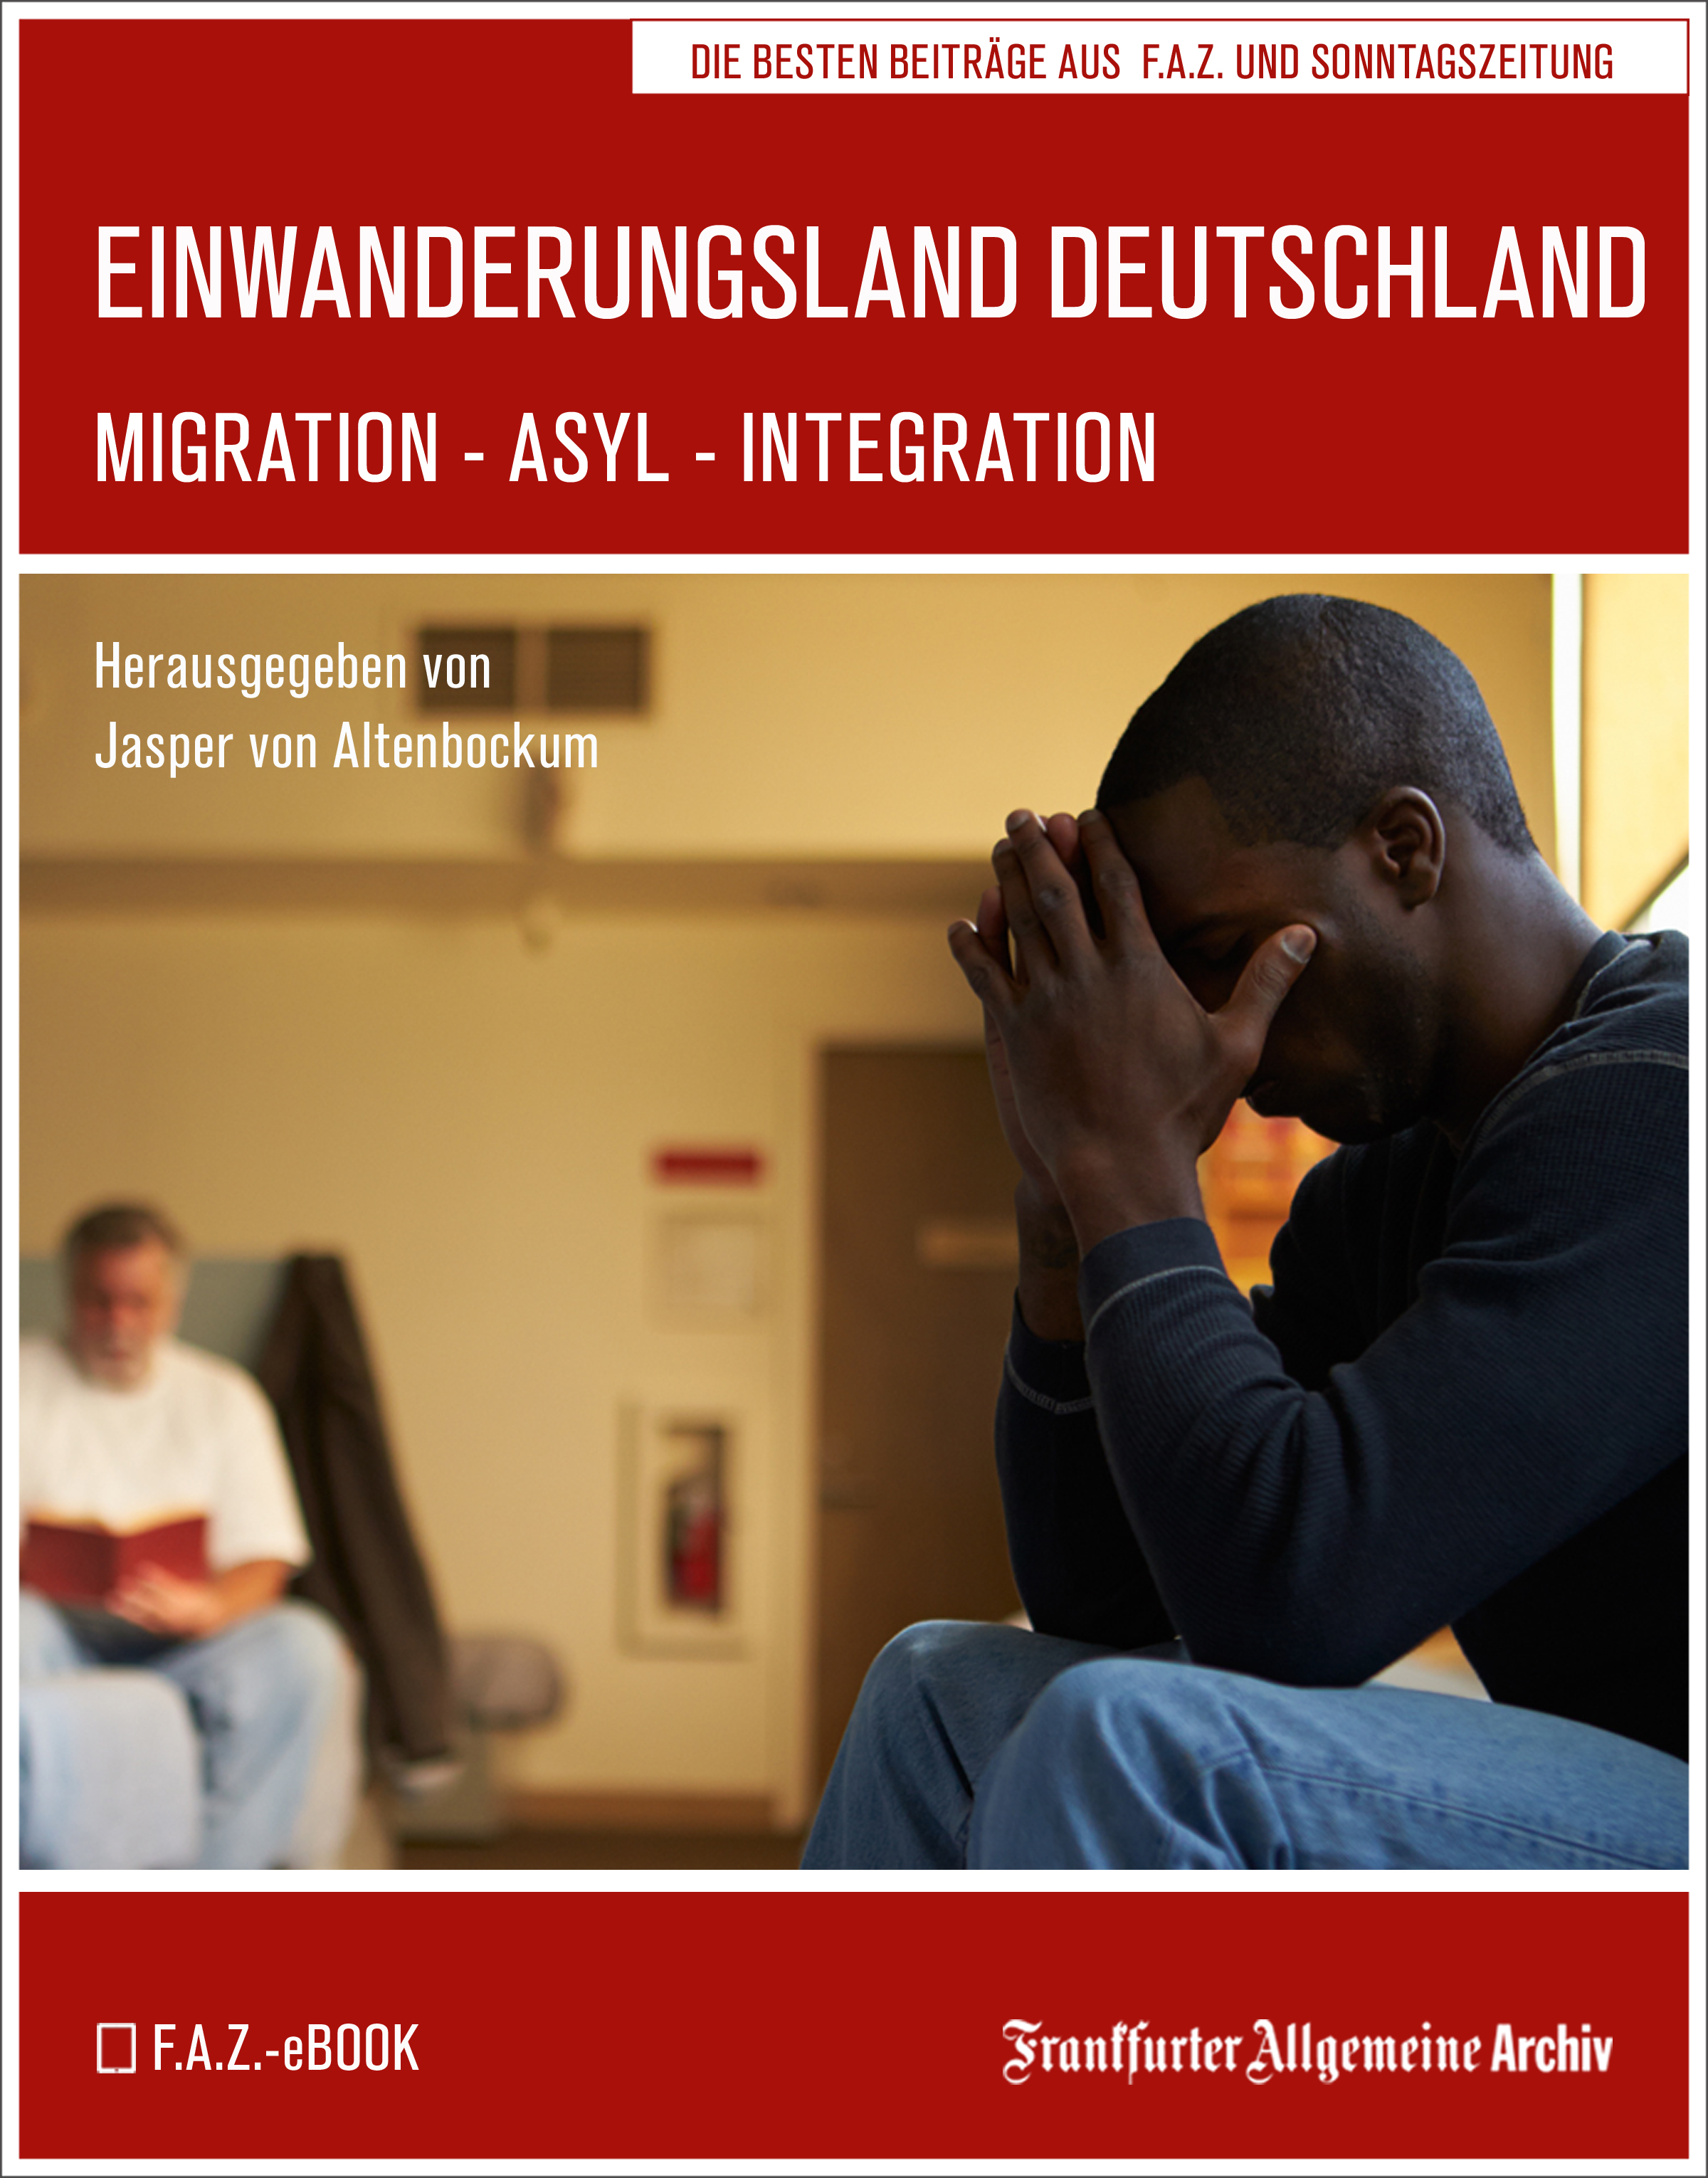 Frankfurter Allgemeine Archiv Einwanderungsland Deutschland